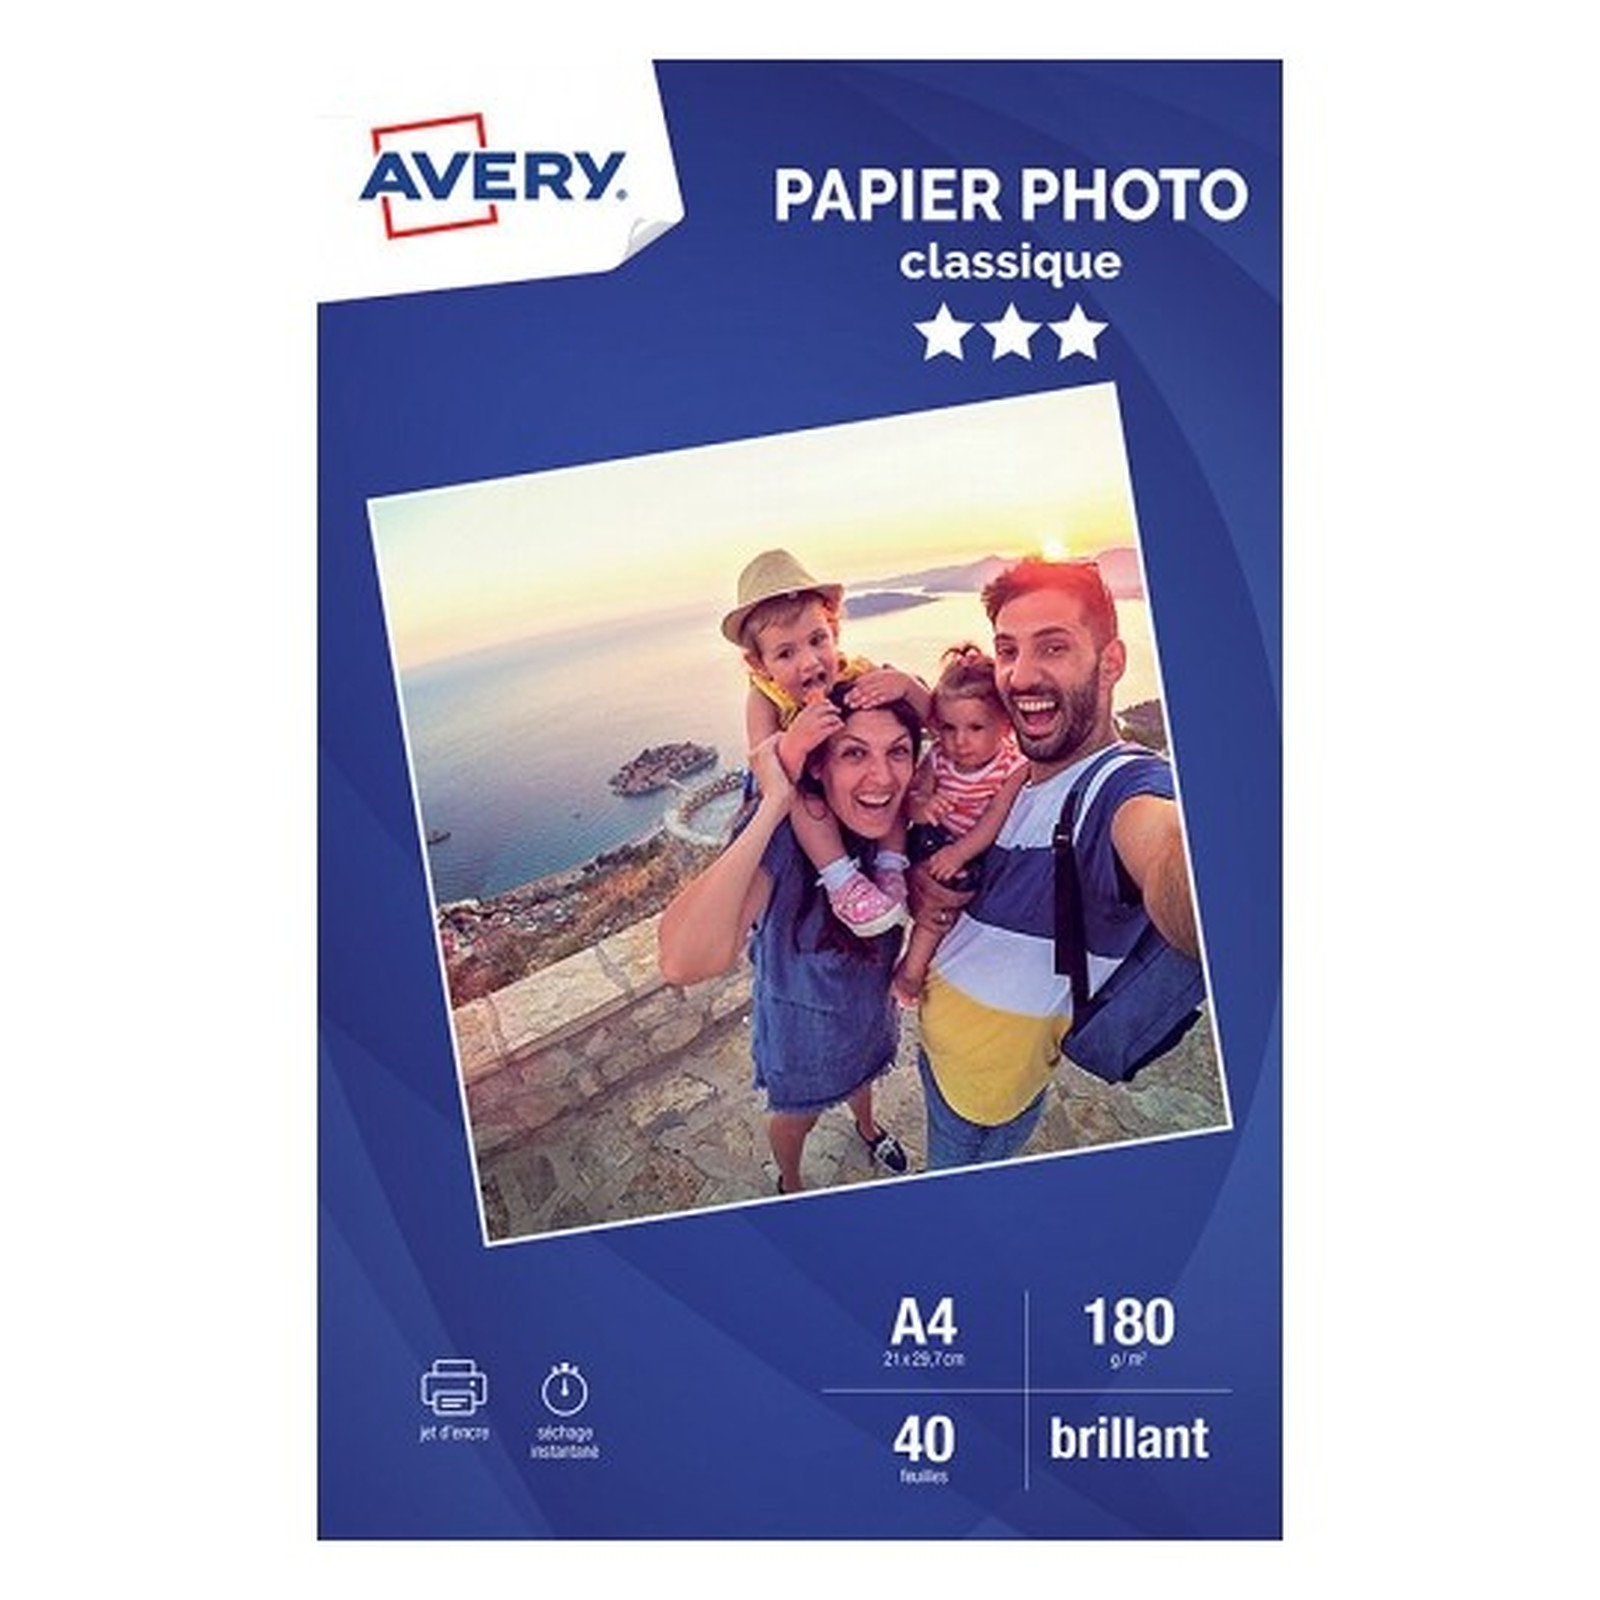 Avery Papier Photo Classique Jet d'encre A4, Blanc, Brillant, 180 g/m² (20 feuilles) - Papier imprimante Avery